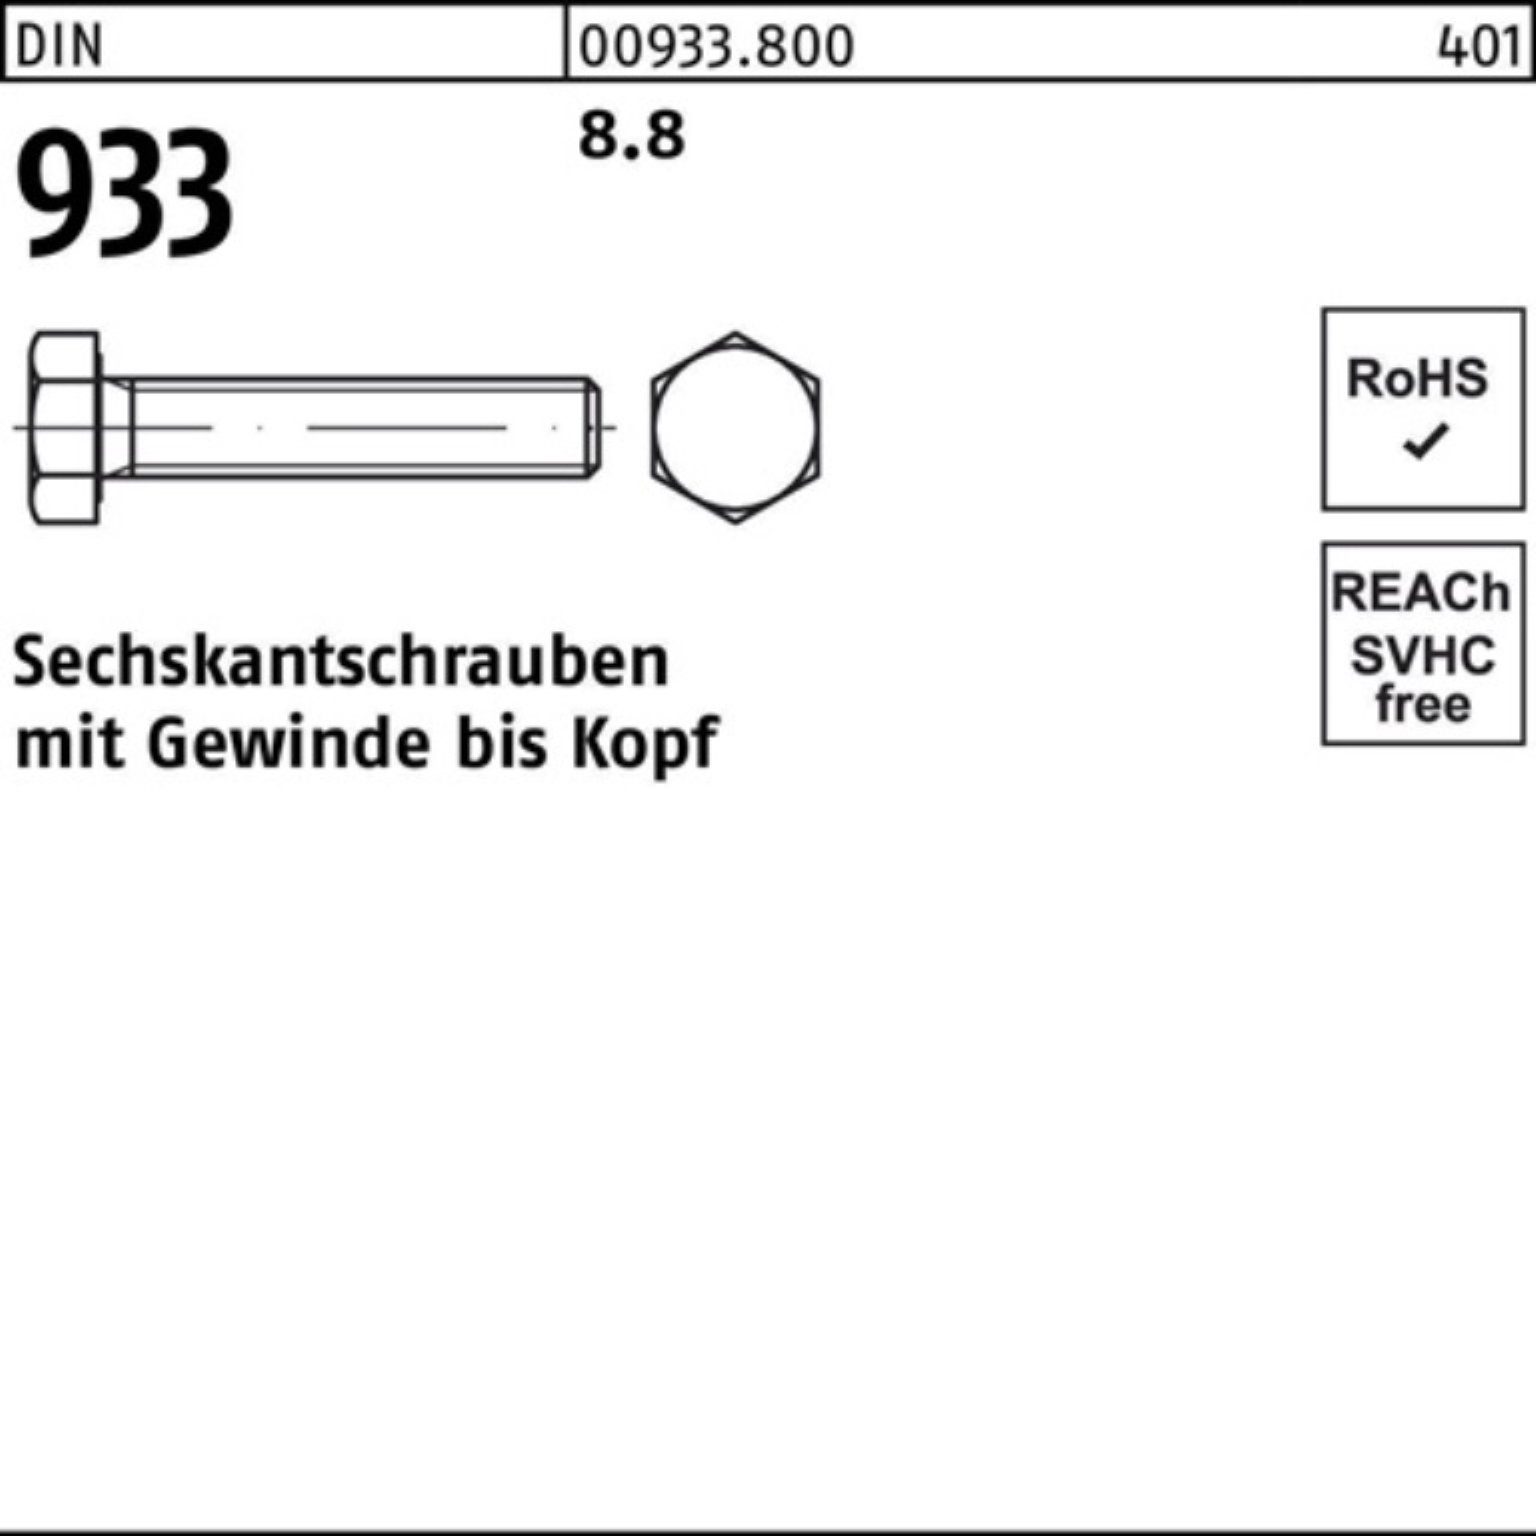 933 20 Sechskantschraube 8.8 Stück DIN 100er 25 VG Pack 933 M20x DIN Sechskantschraube Reyher